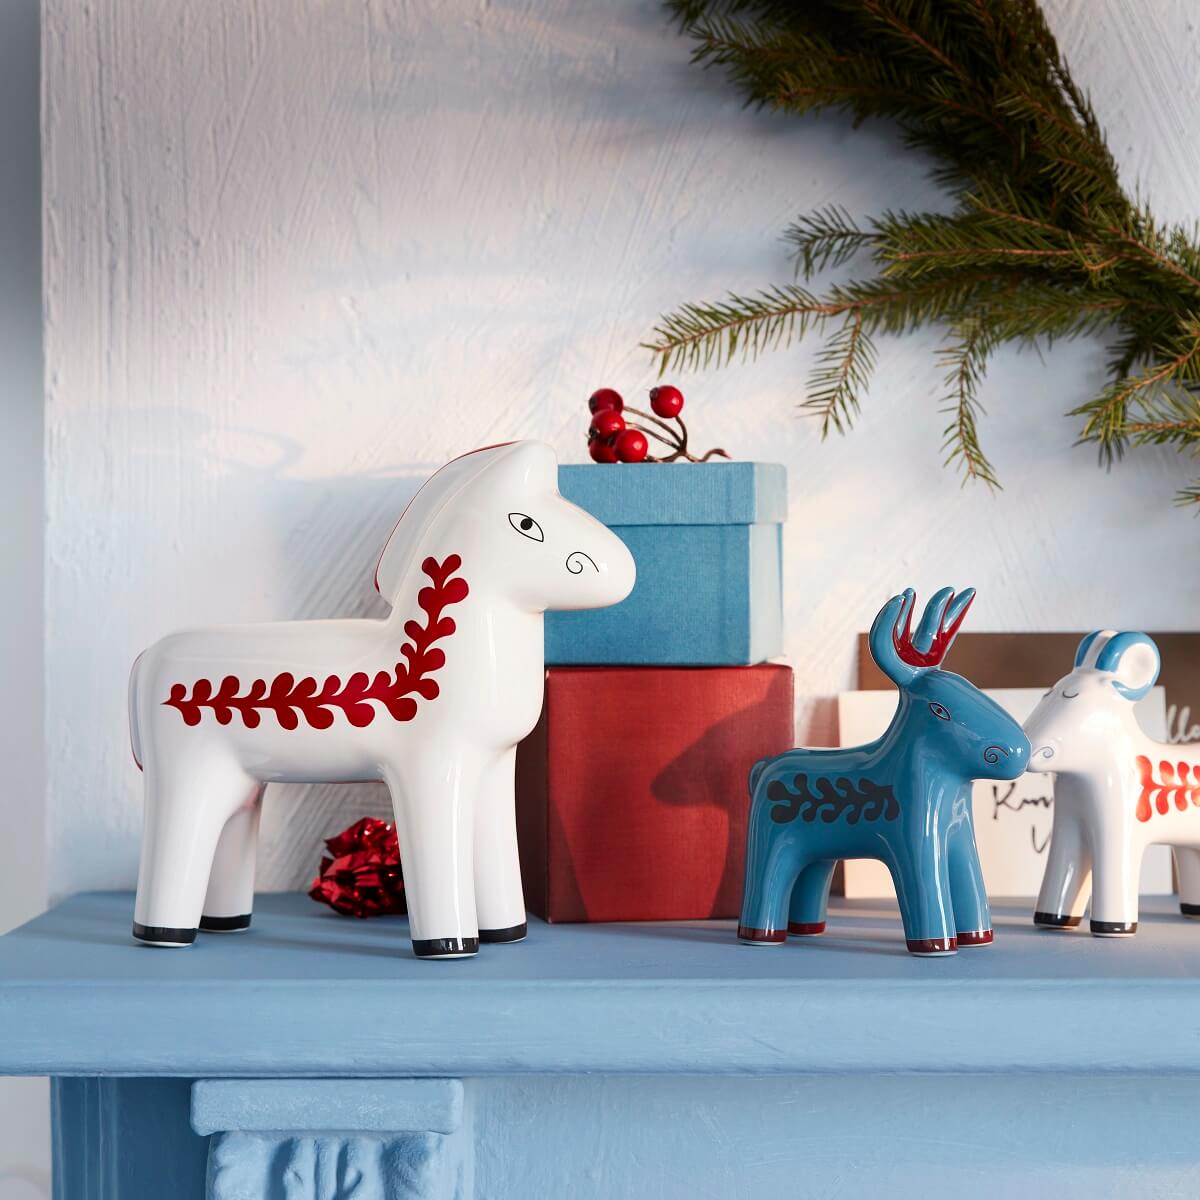 renne et cheval céramique Noël IKEA 2022